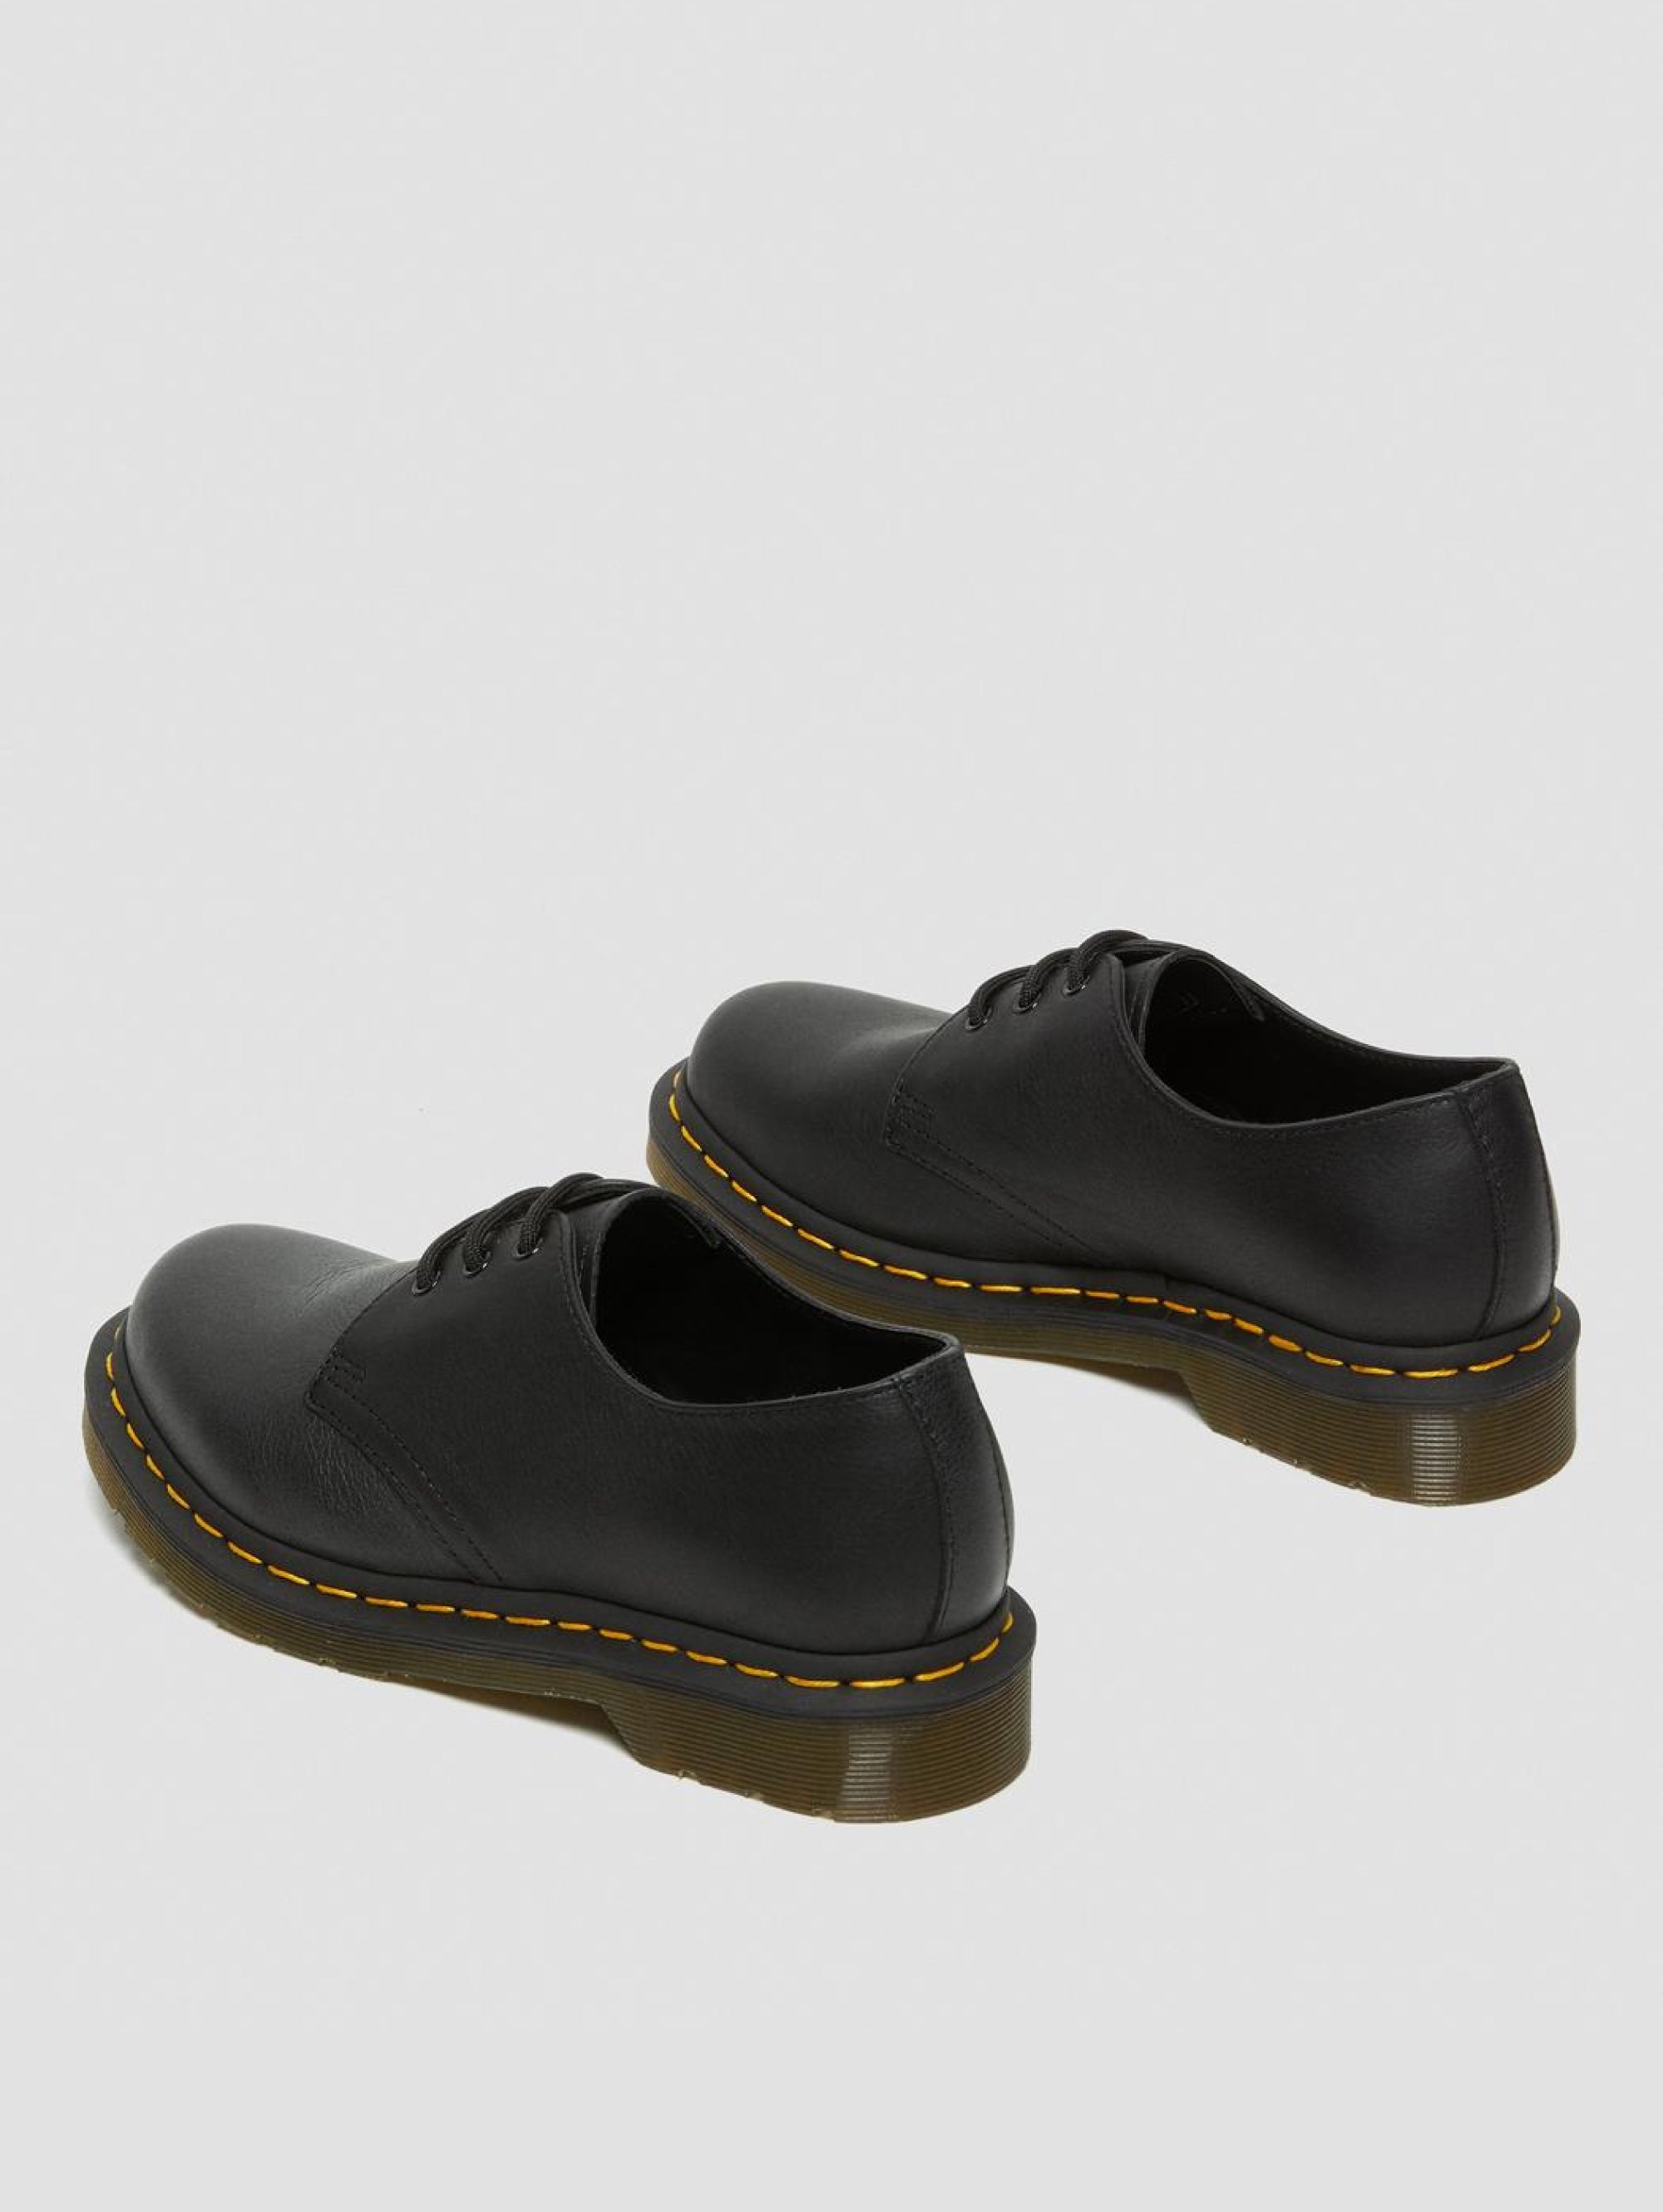 Flache Schuhe zum Schnüren Modell 1461 Schwarz